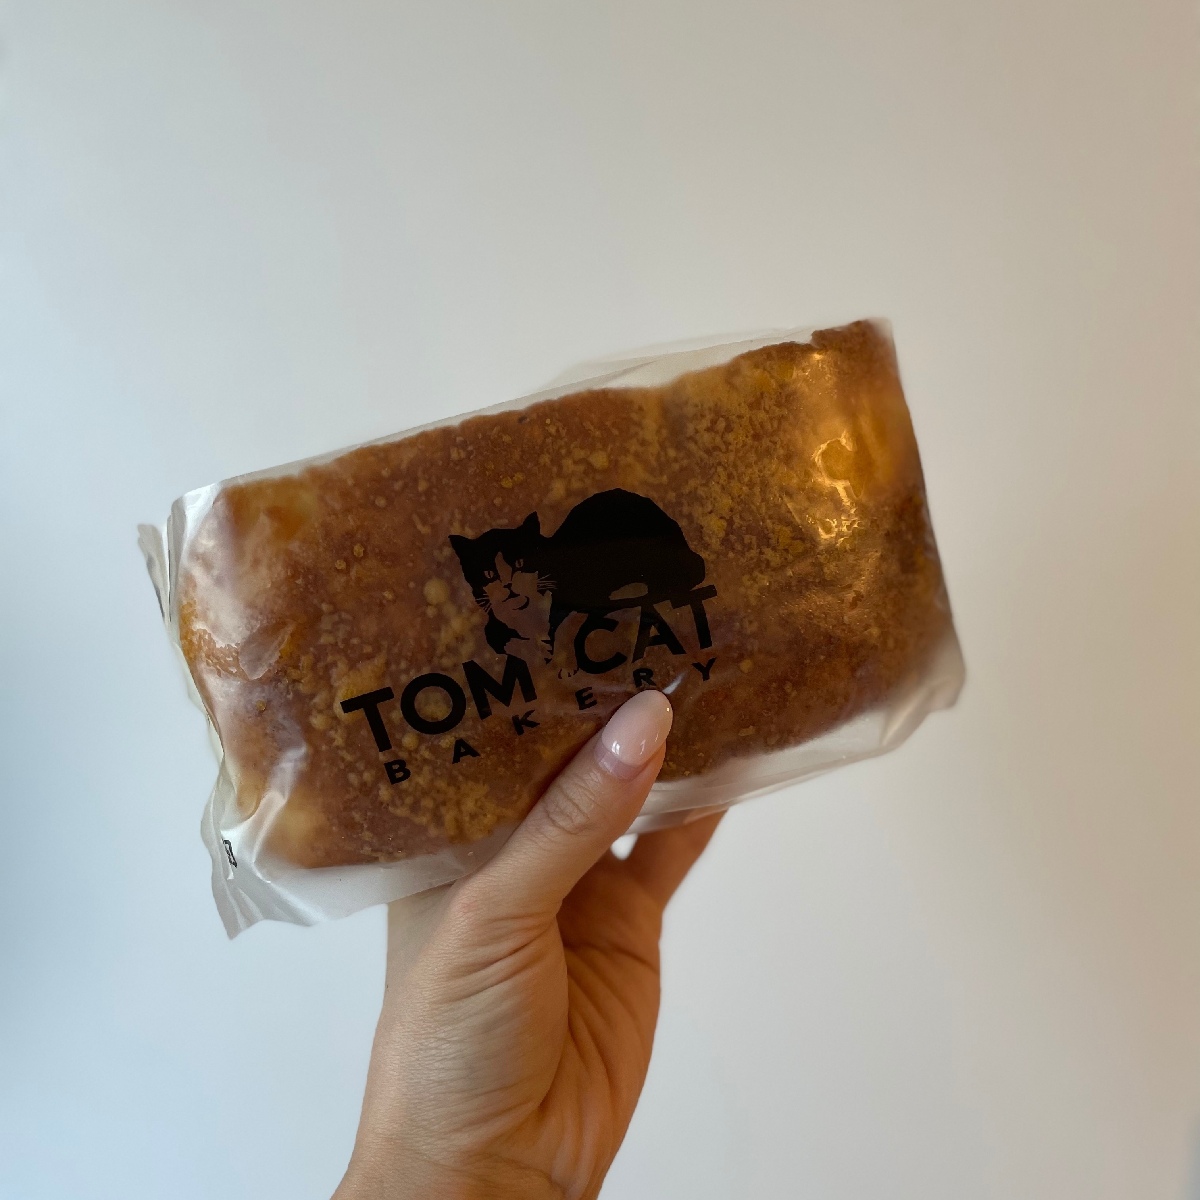 【横浜駅】 日本初上陸の大人気のパン屋さん🥖ニューヨーク発祥のオーセンティック・ベーカリー『TOMCAT BAKERY』に行ってみて🐈‍⬛